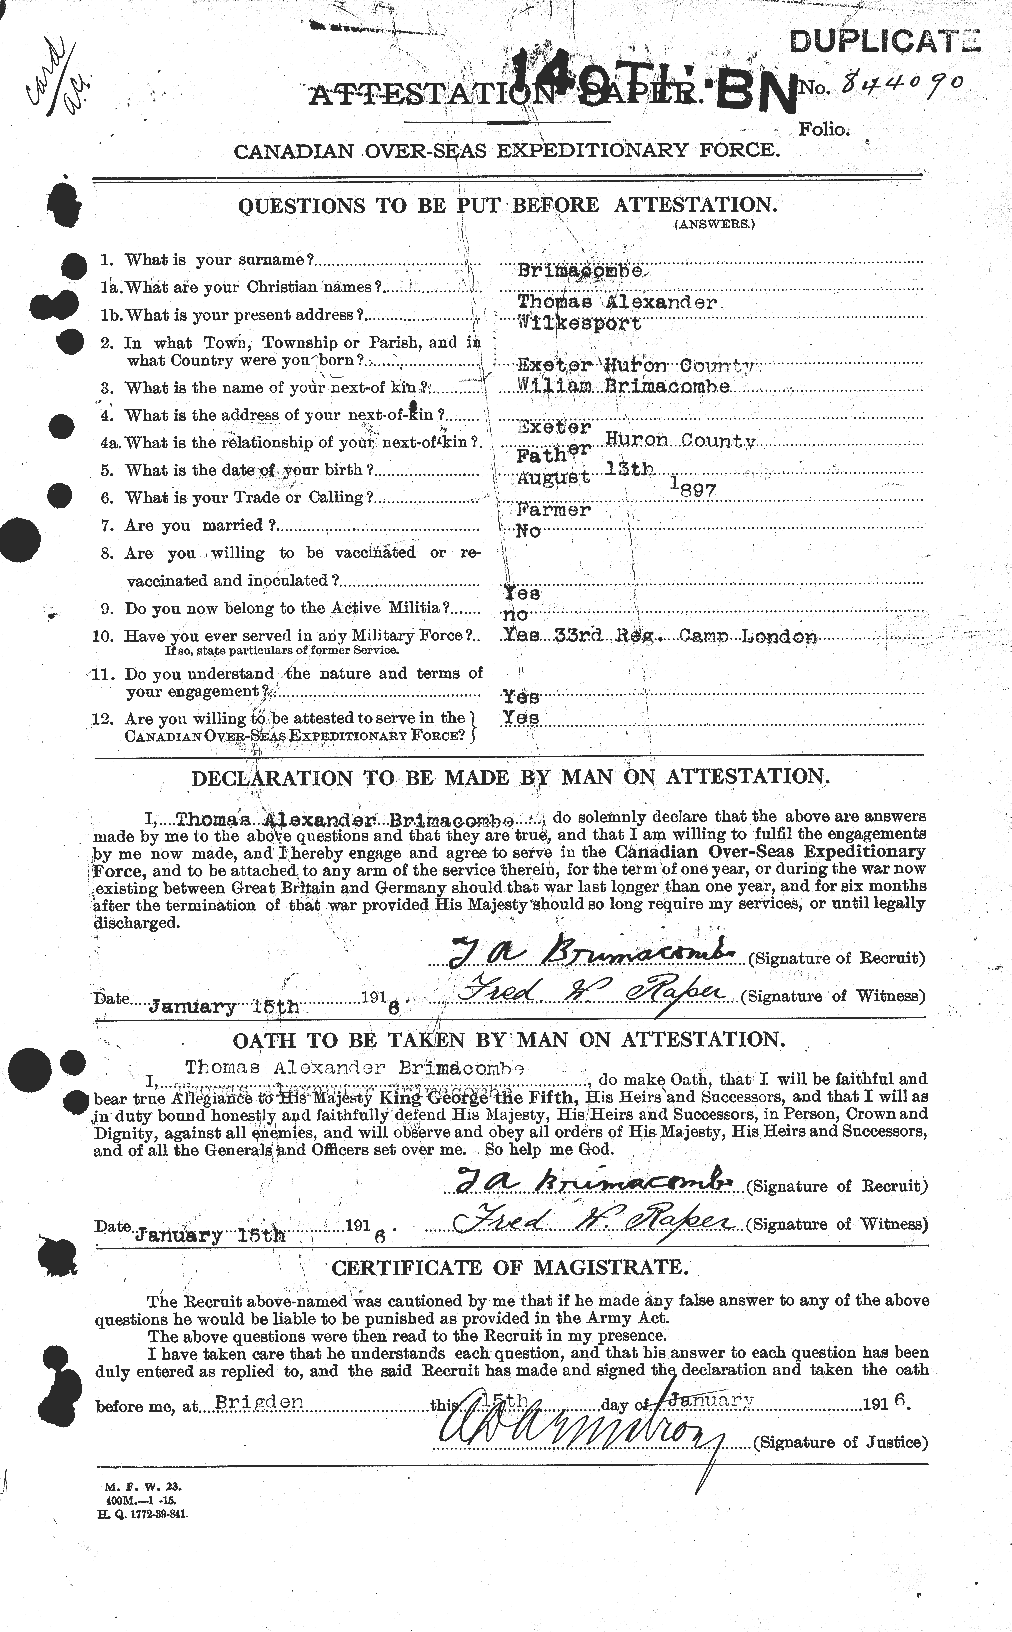 Dossiers du Personnel de la Première Guerre mondiale - CEC 265186a